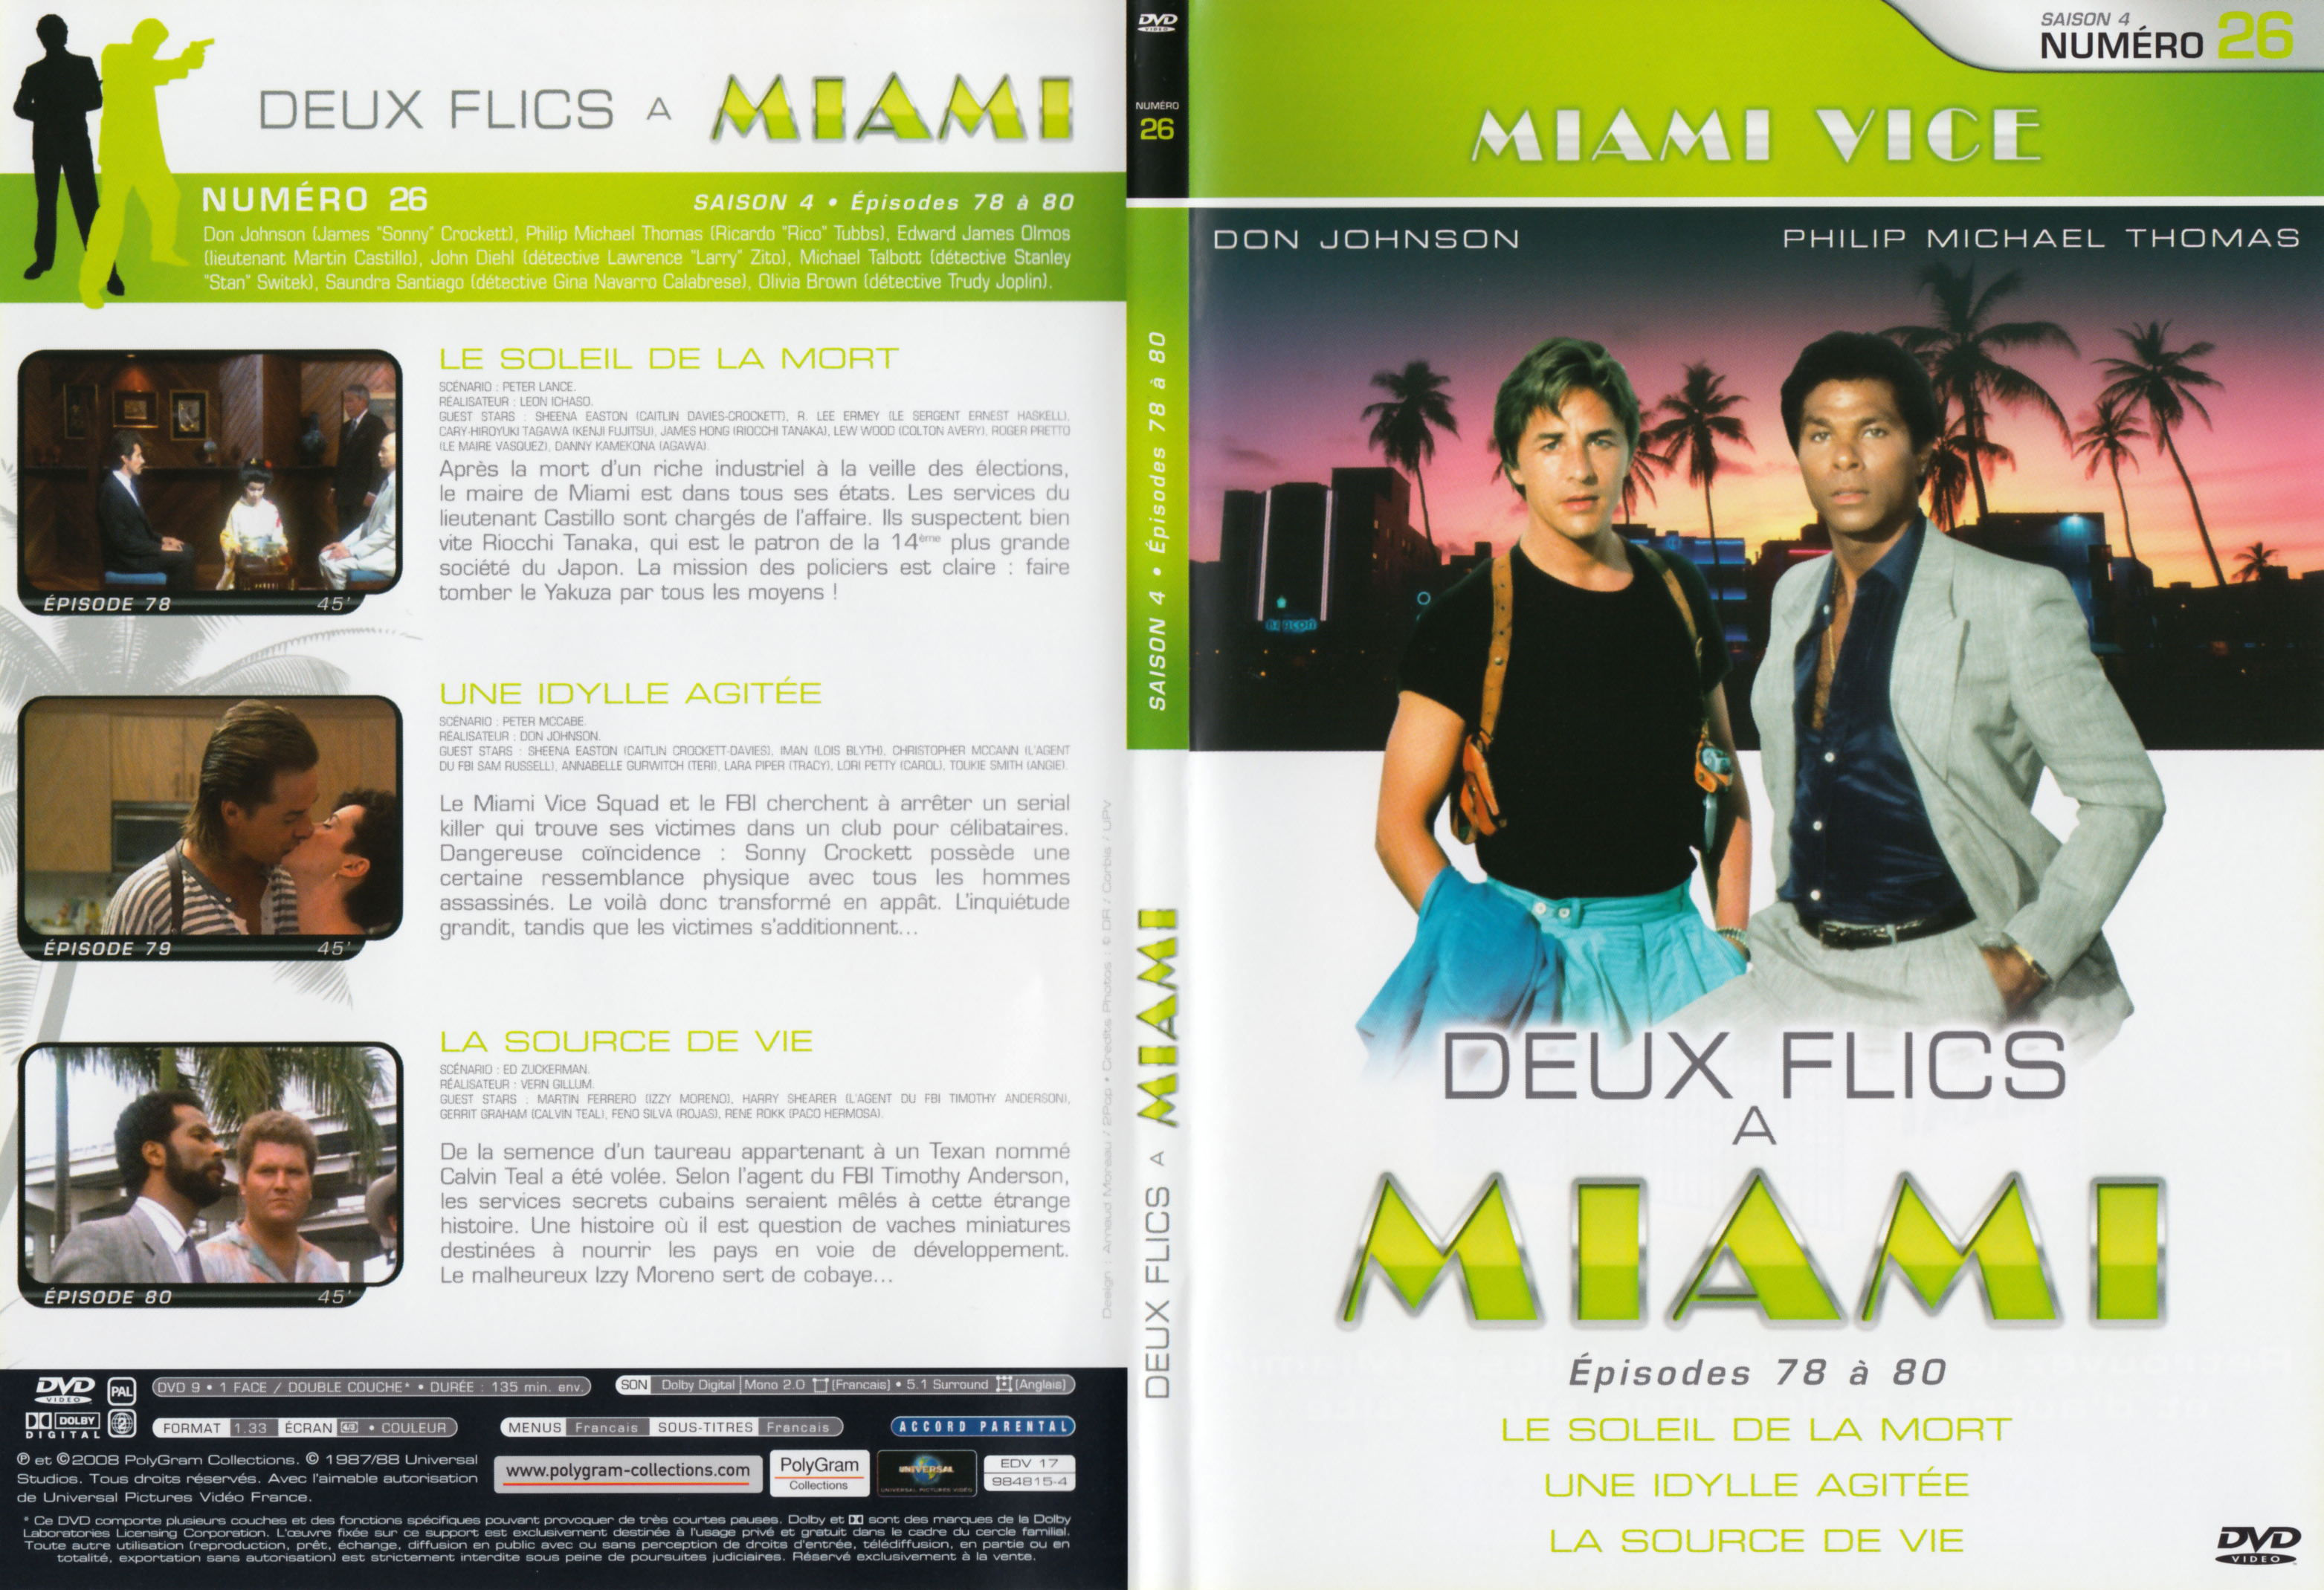 Jaquette DVD Deux flics  Miami Saison 4 vol 26